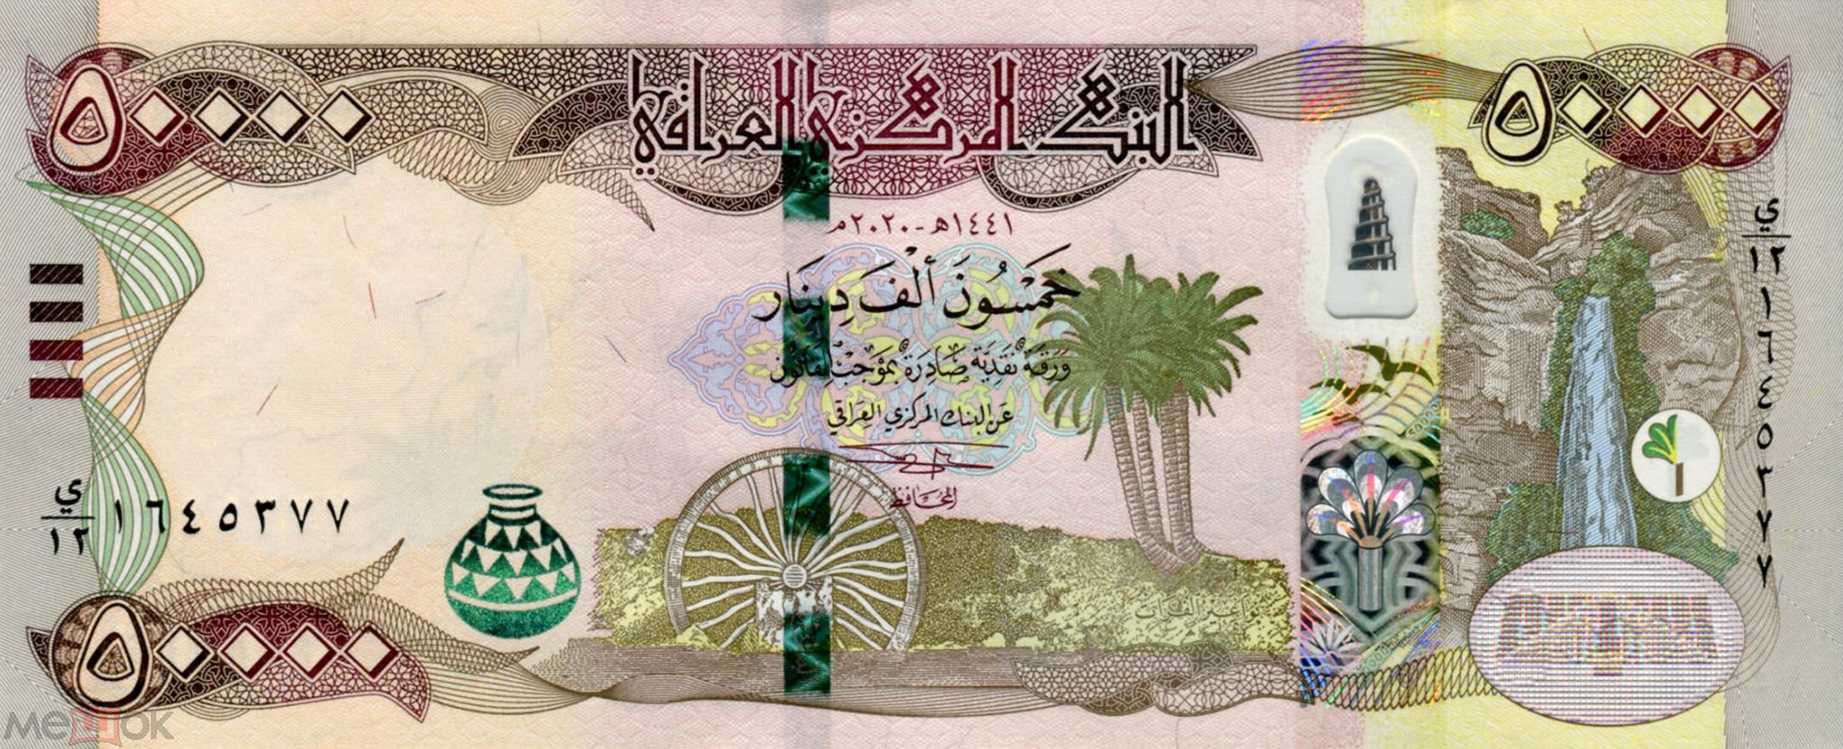 Iraq_CBI_50000_dinars_2020.00.00_B357b_P